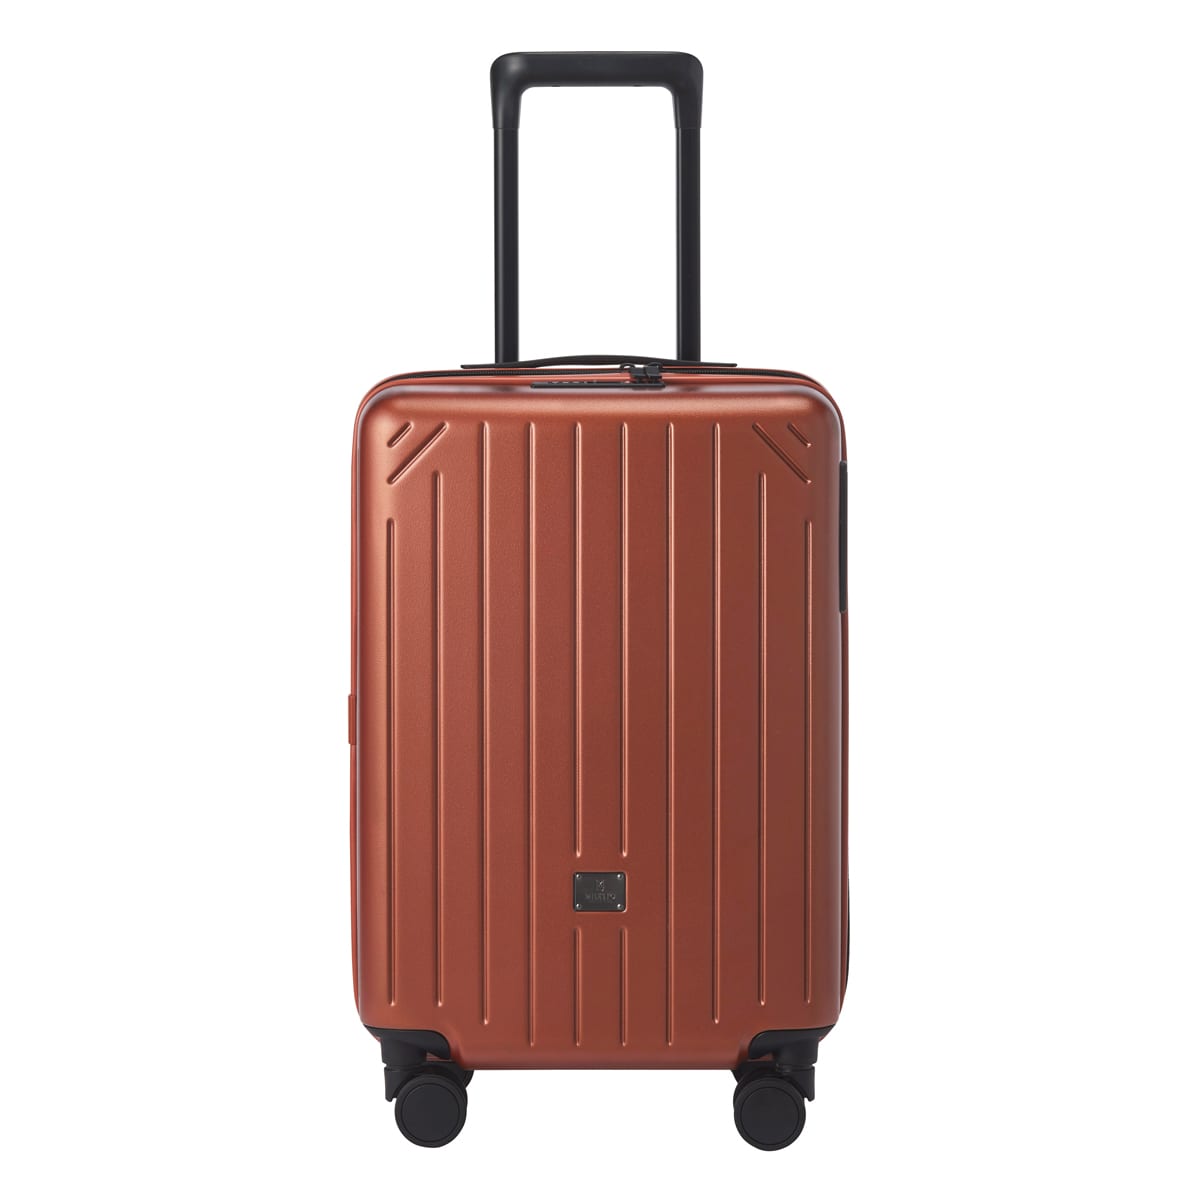 【お値引可】スーツケース キャリーケース 機内持ち込みサイズ 41L充電口